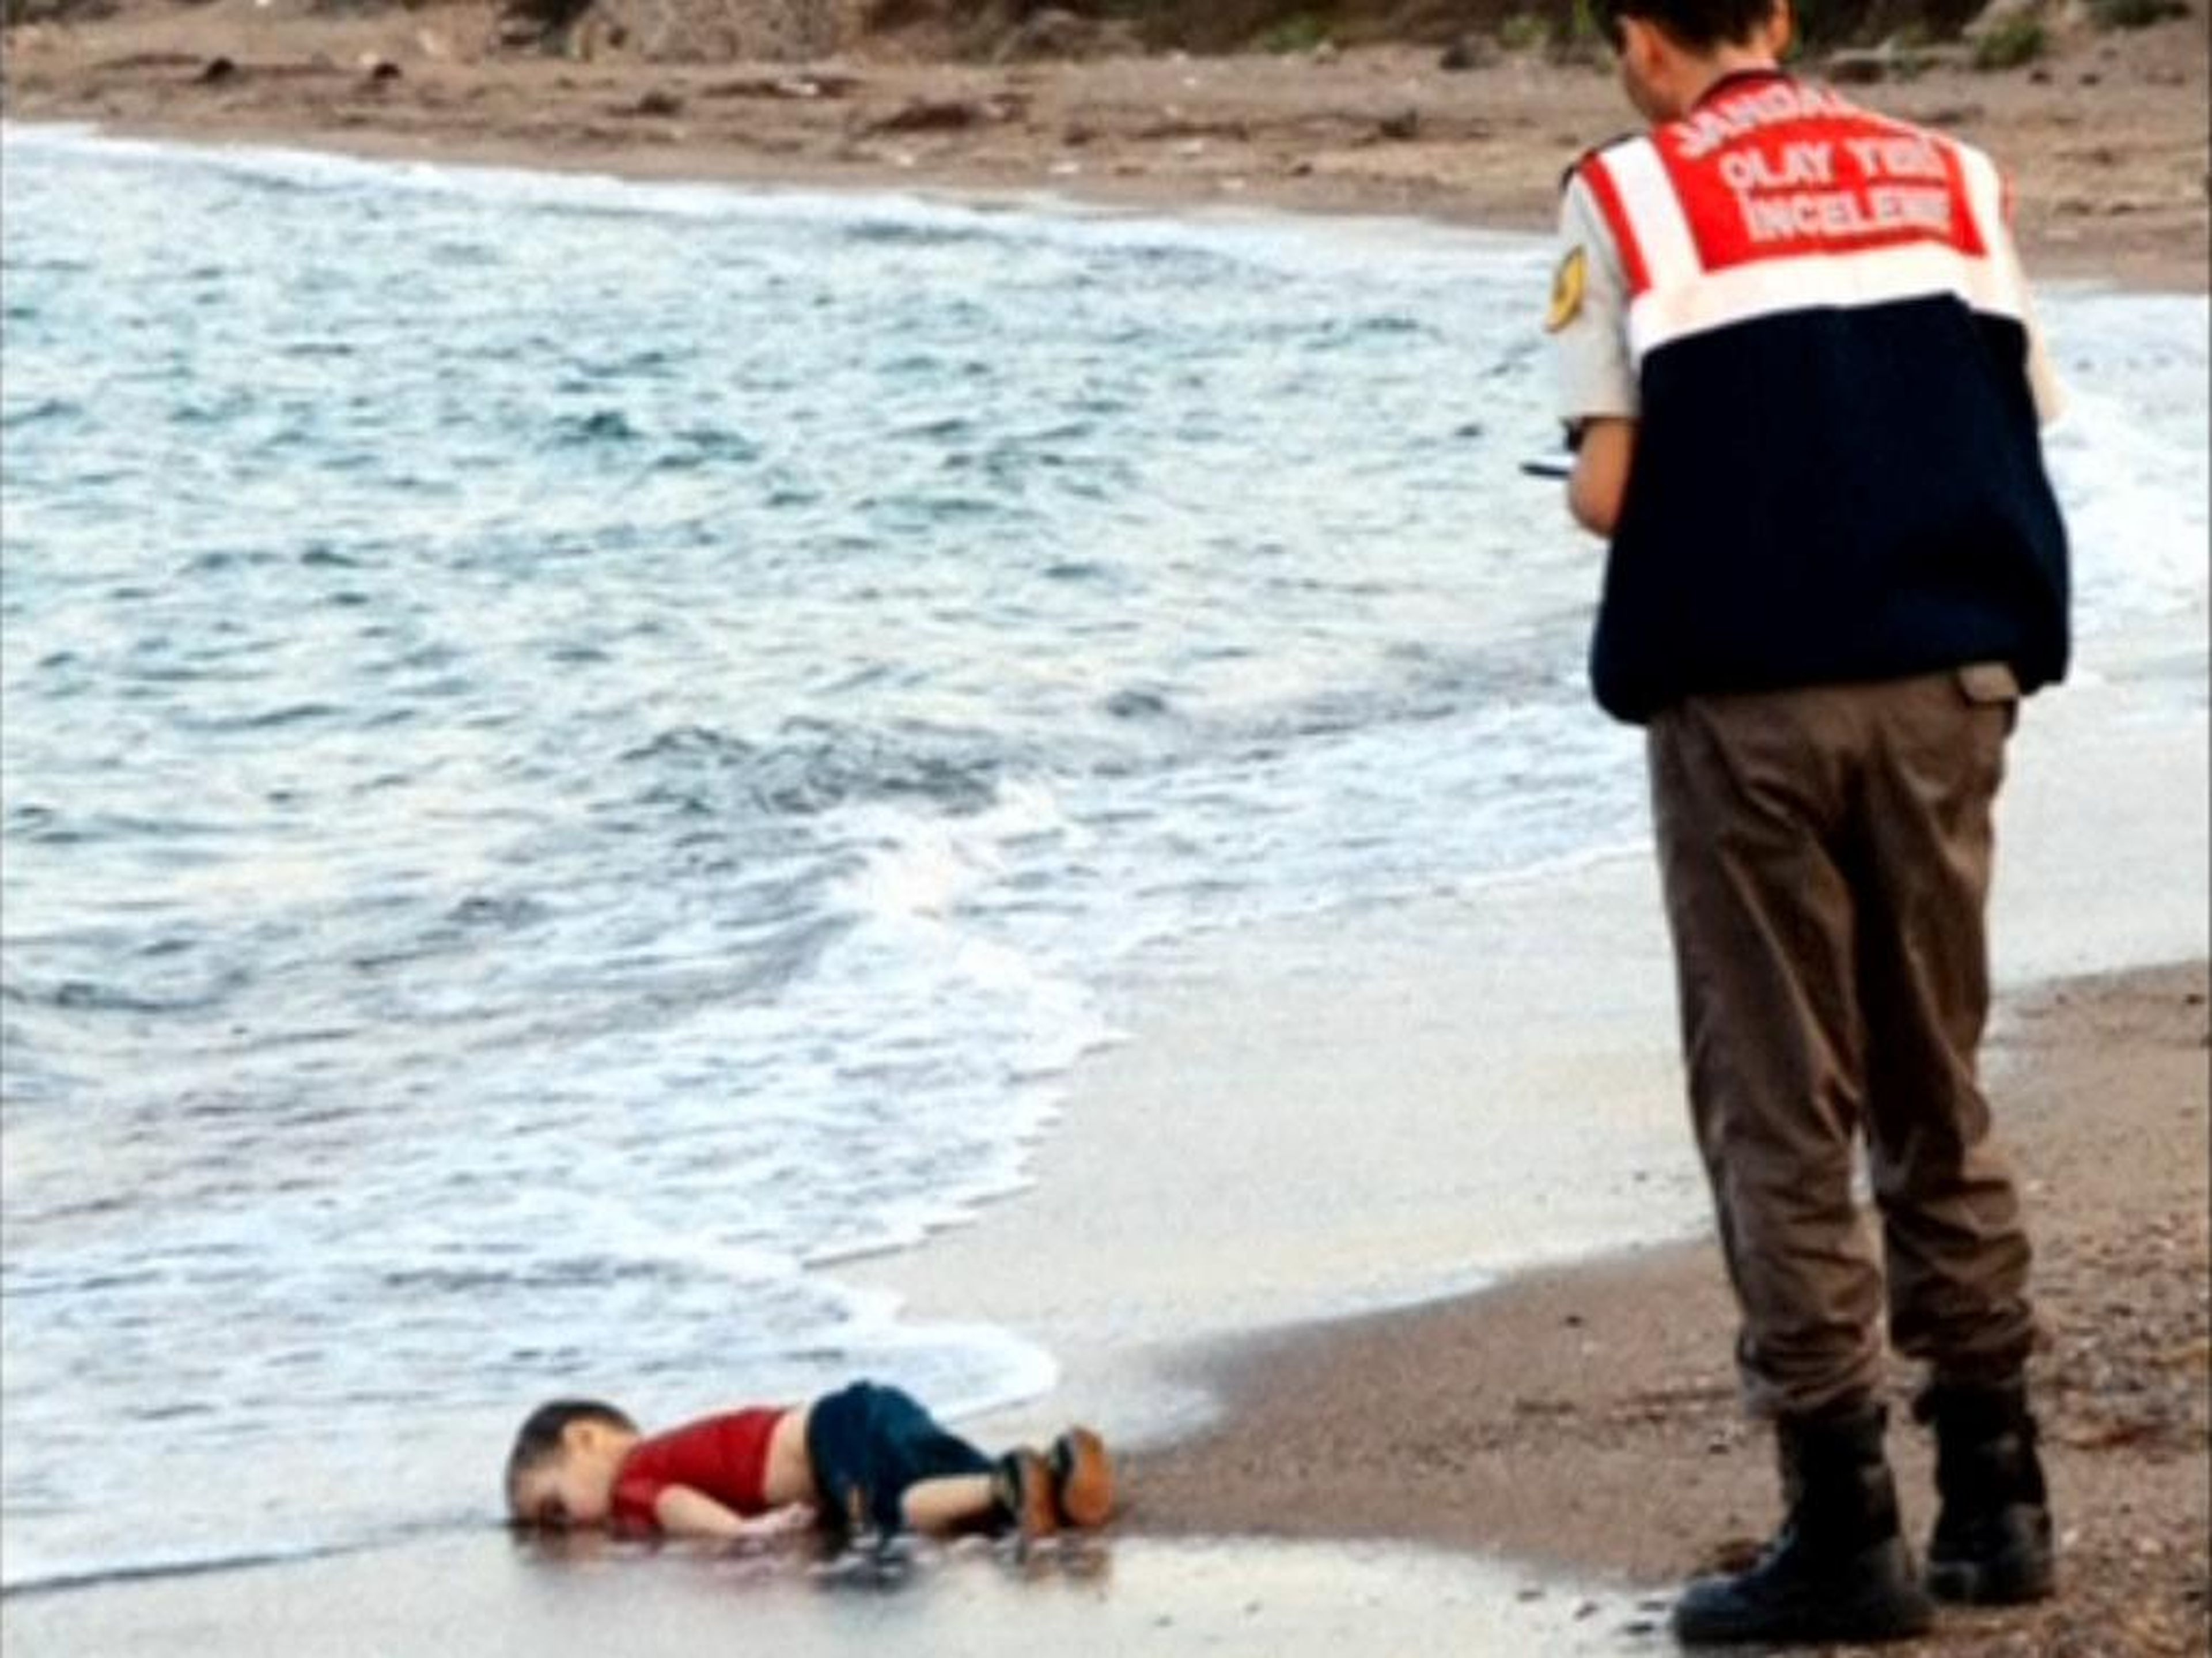 Después de que esta foto de Alan Kurdi se volviera viral, aumentó la recaudación de fondos para los refugiados.